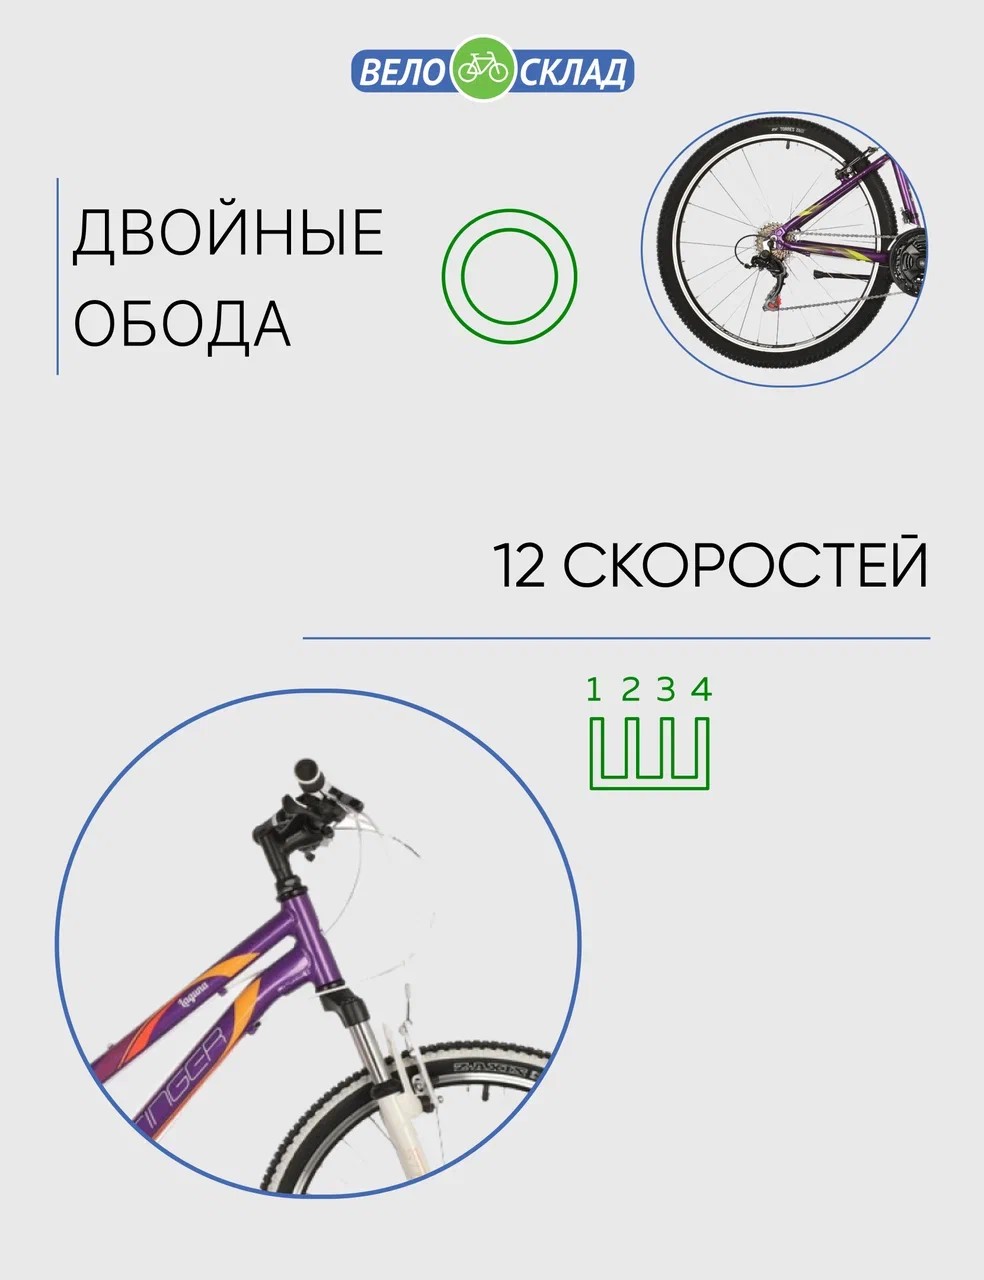 Подростковый велосипед Stinger Laguna 24, год 2021, цвет Фиолетовый, ростовка 12